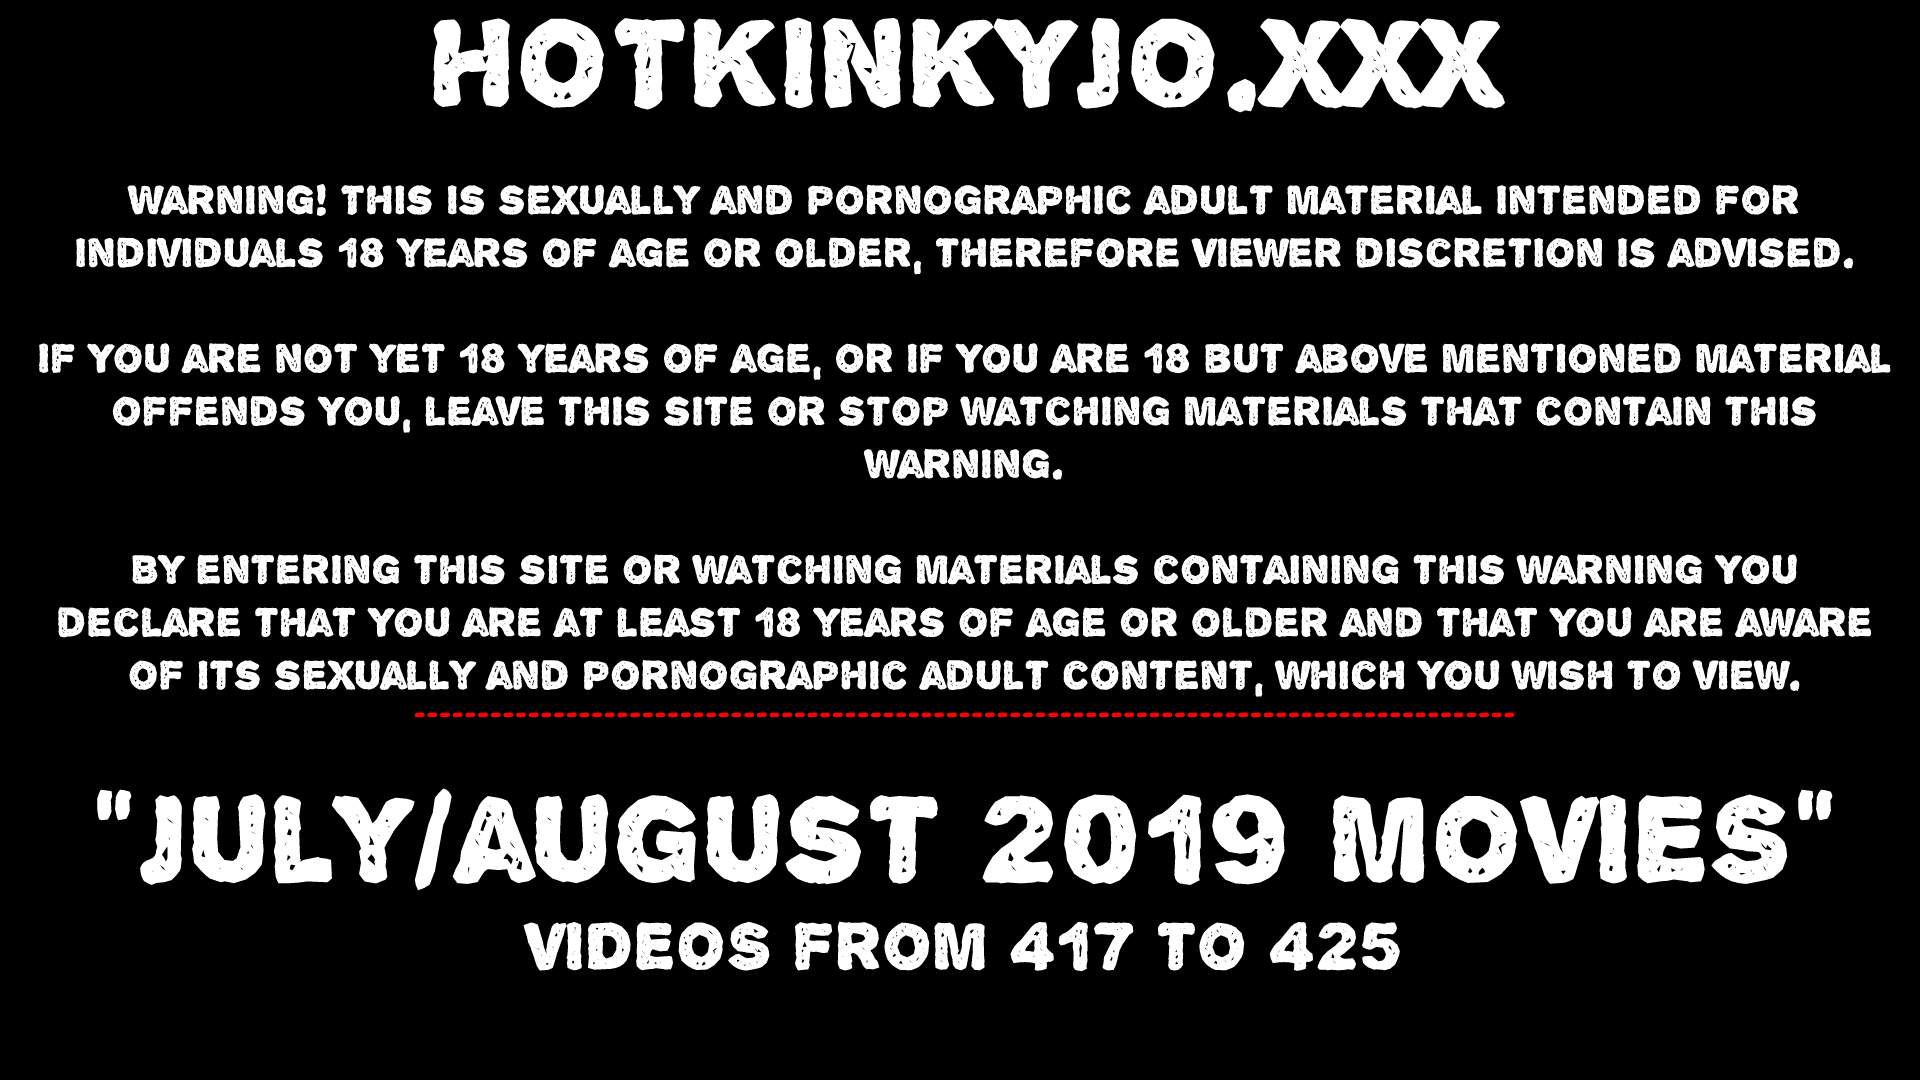 Julyaug News At Hotkinkyjo Extreme Anal Fisting Prolapse Public Nudity